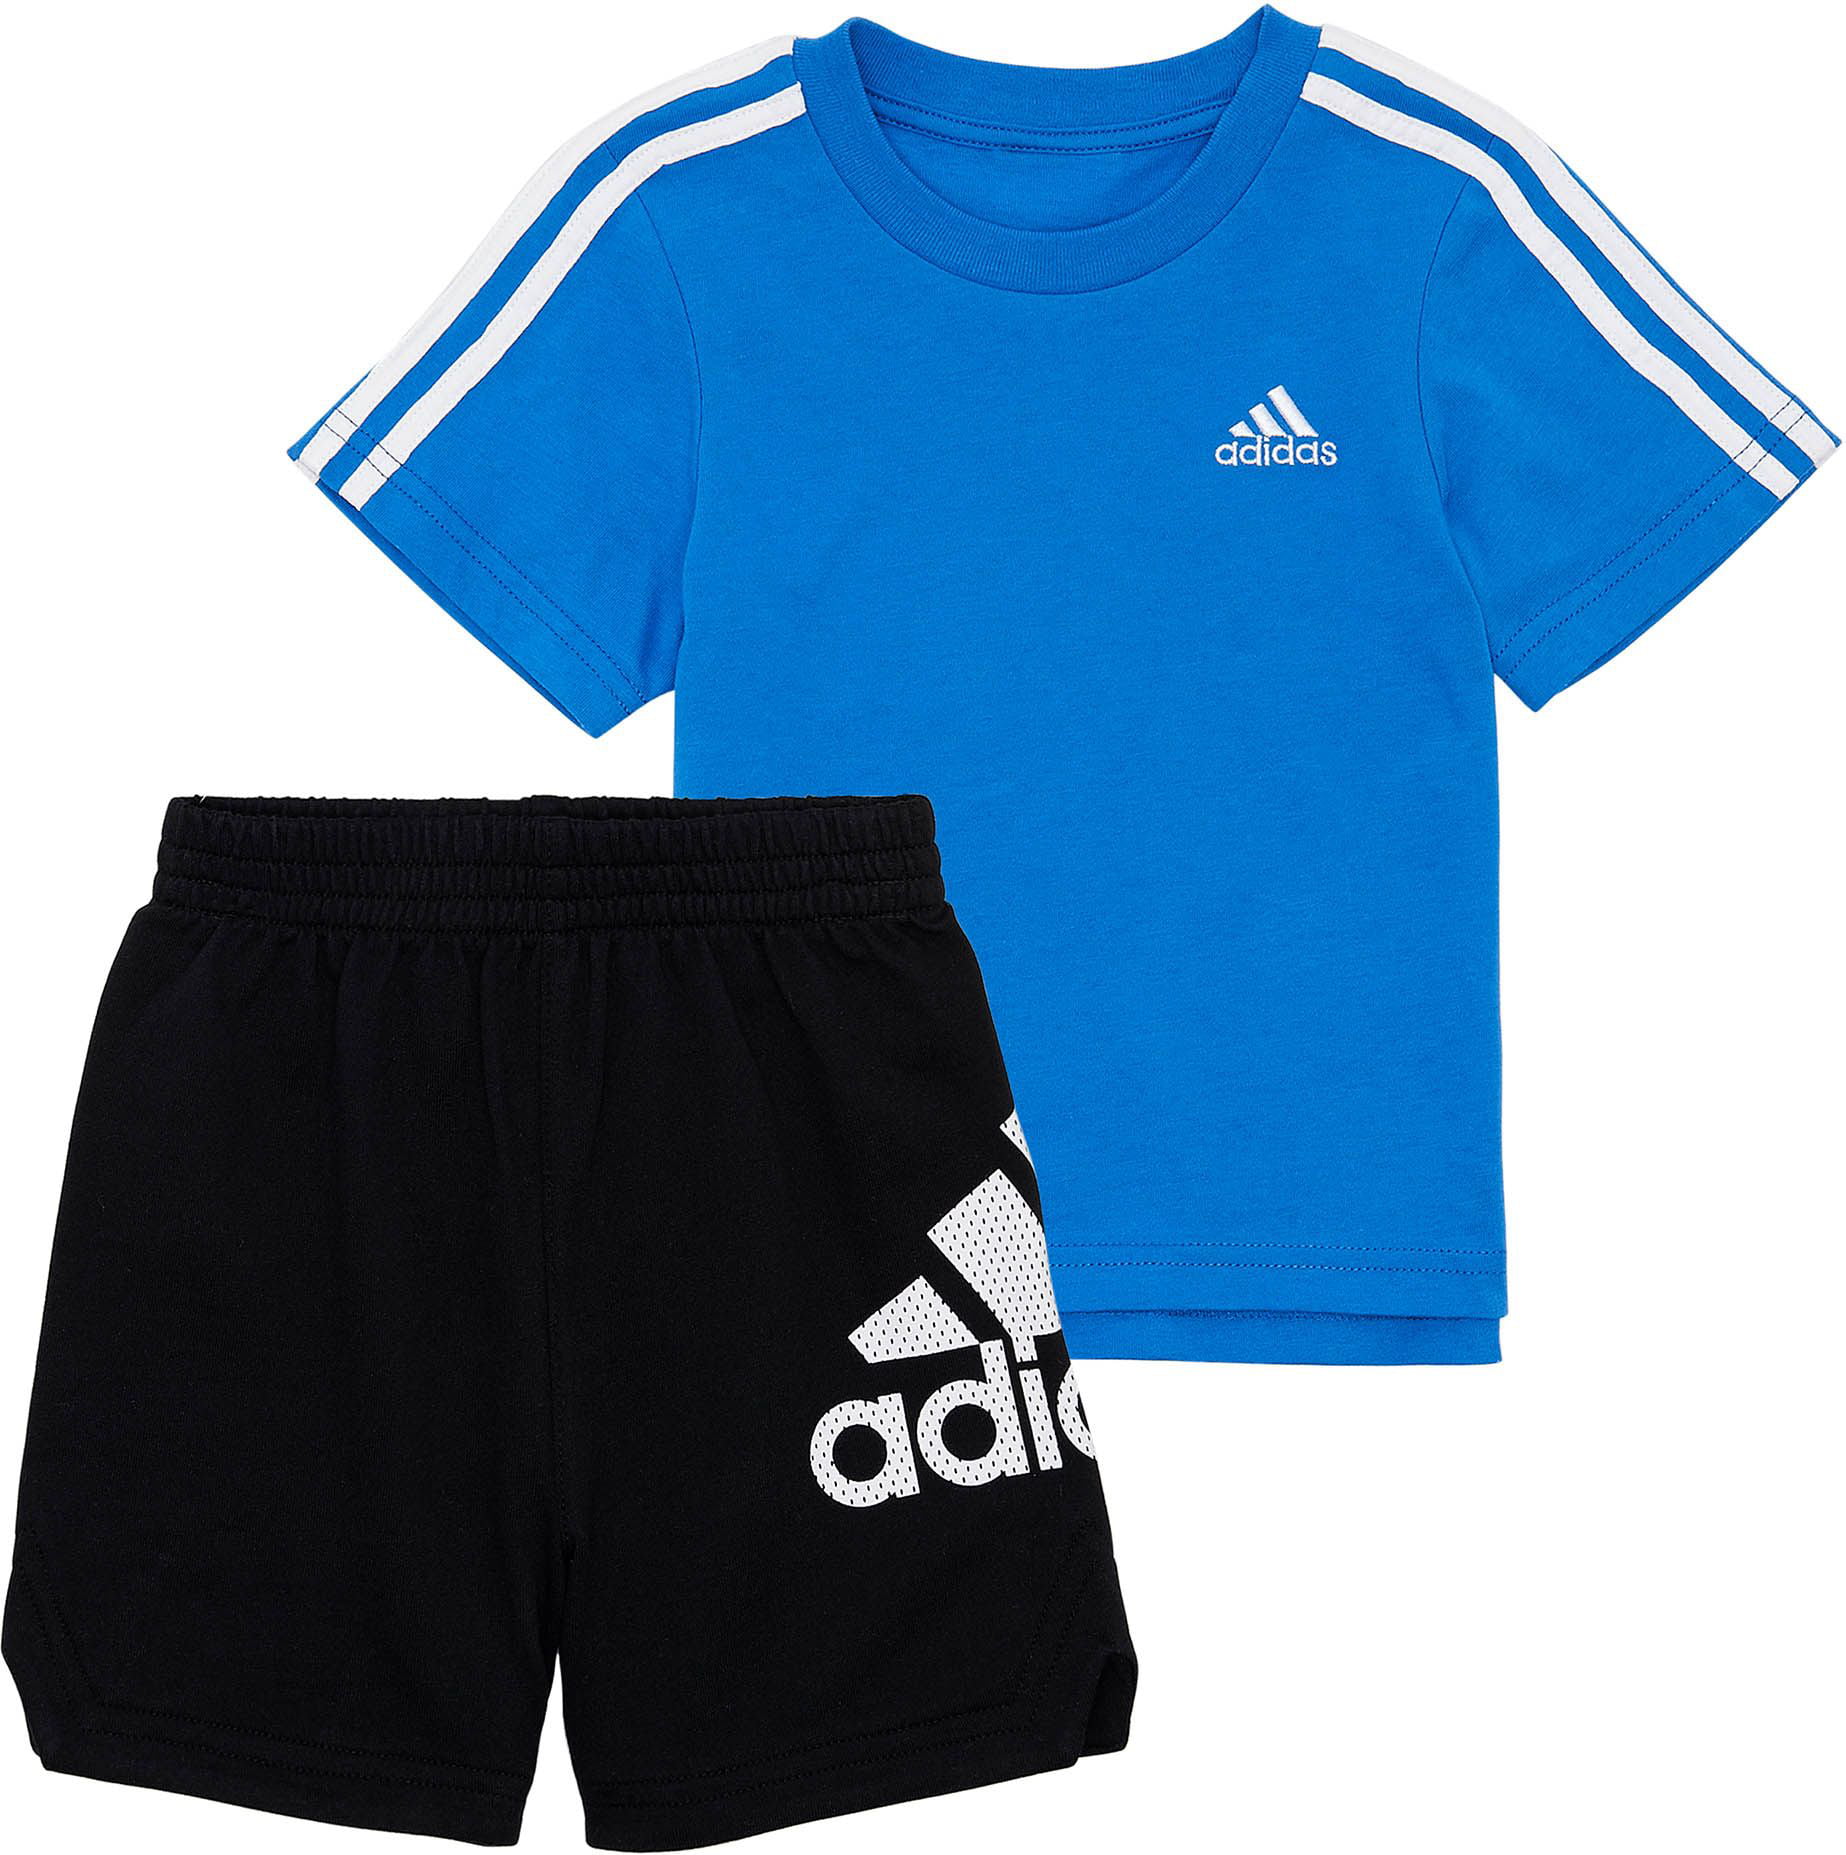 adidas Little Boys' Sport T-Shirt and Short Set - Walmart.com - Walmart.com